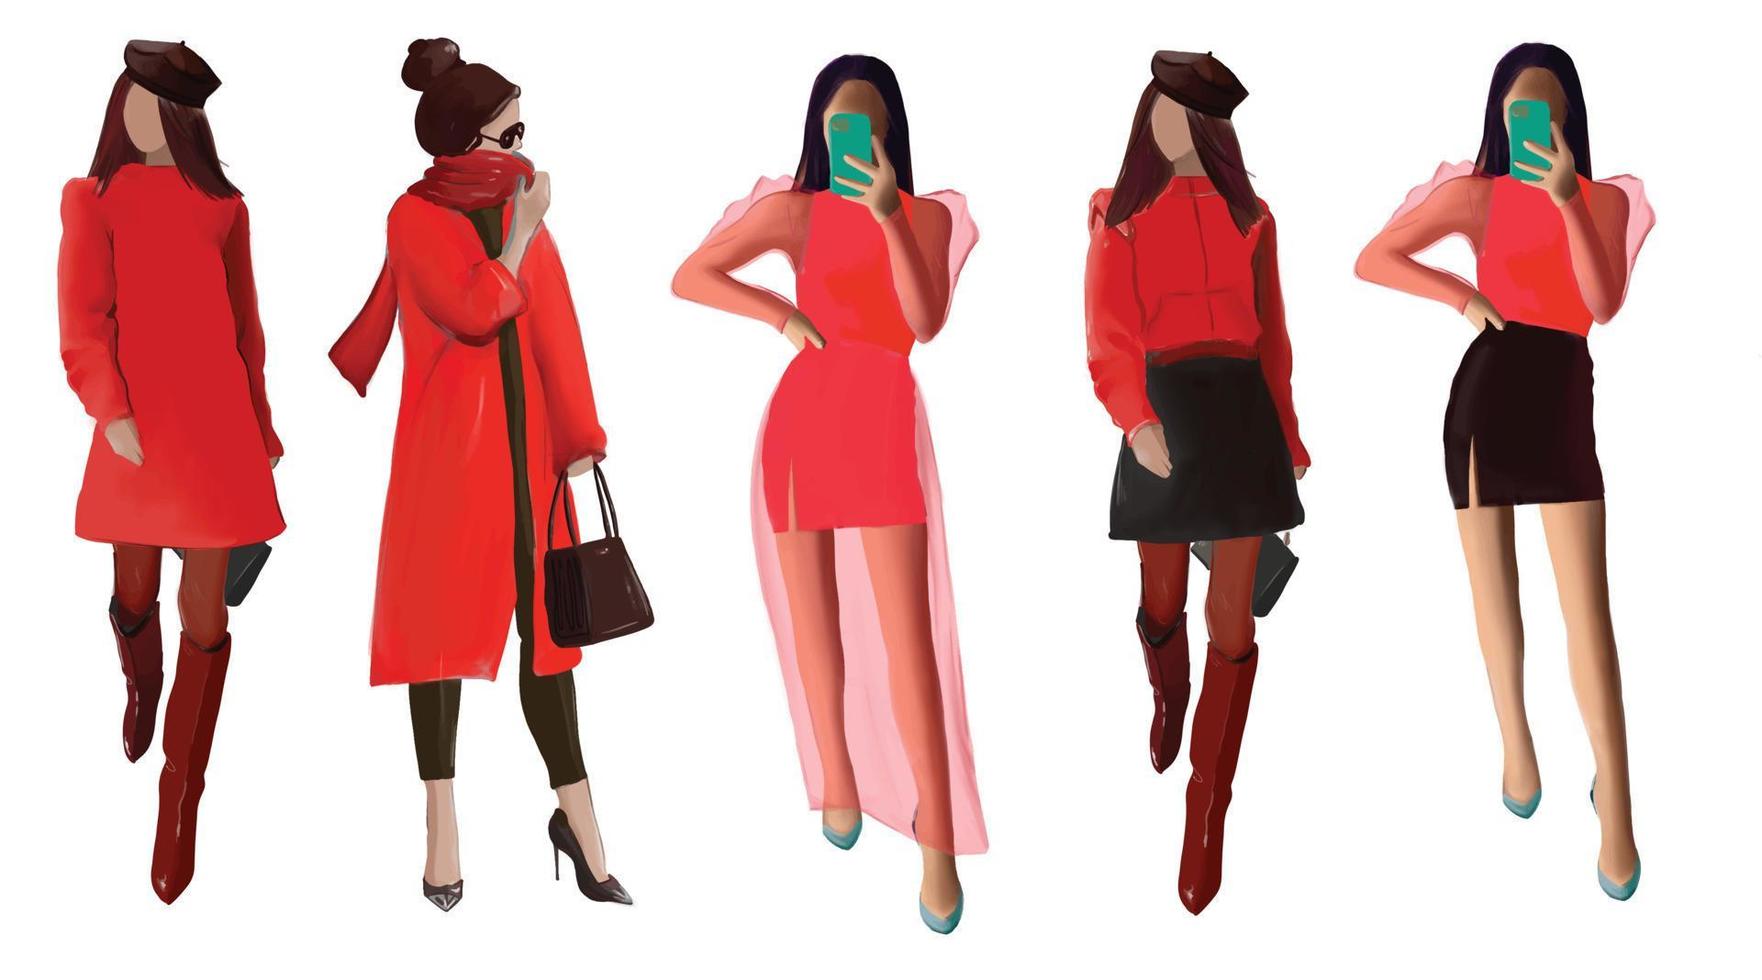 grupo de mulheres em roupas da moda na cor vermelha, meninas da moda, ilustração vetorial vetor